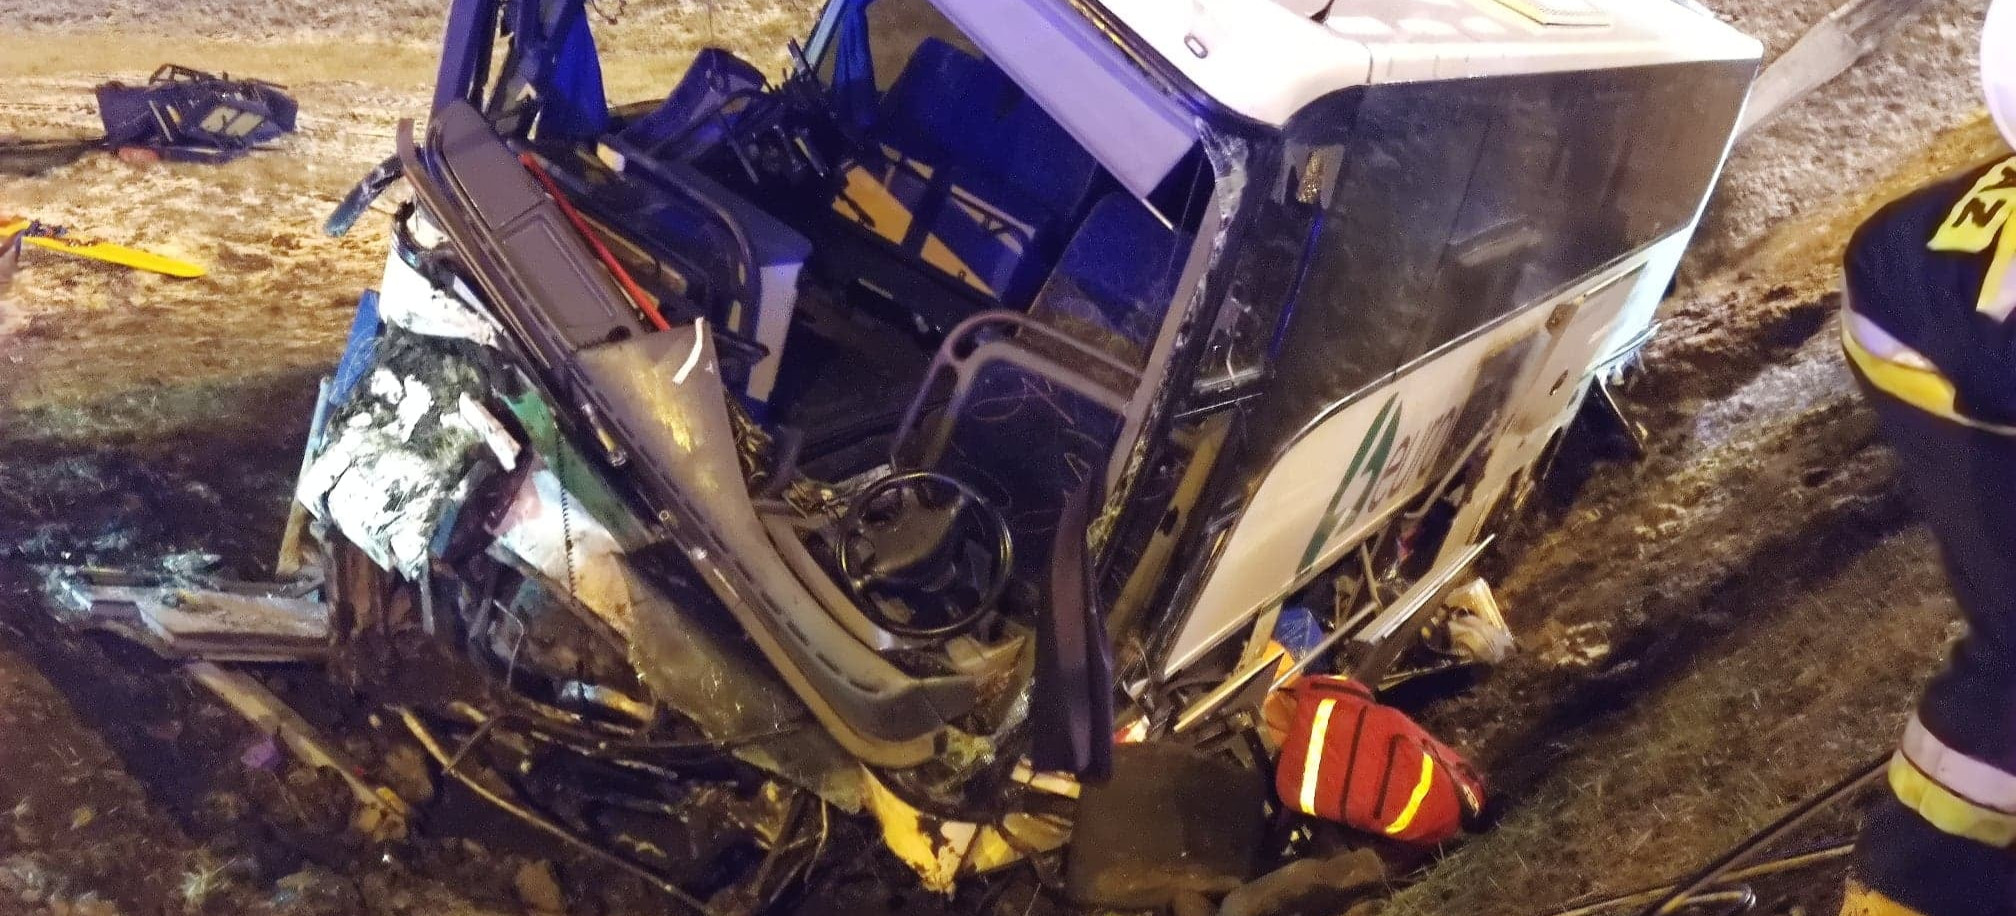 Kolejny wypadek autokaru pod Przemyślem! 1 osoba nie żyje, 5 rannych (ZDJĘCIA)